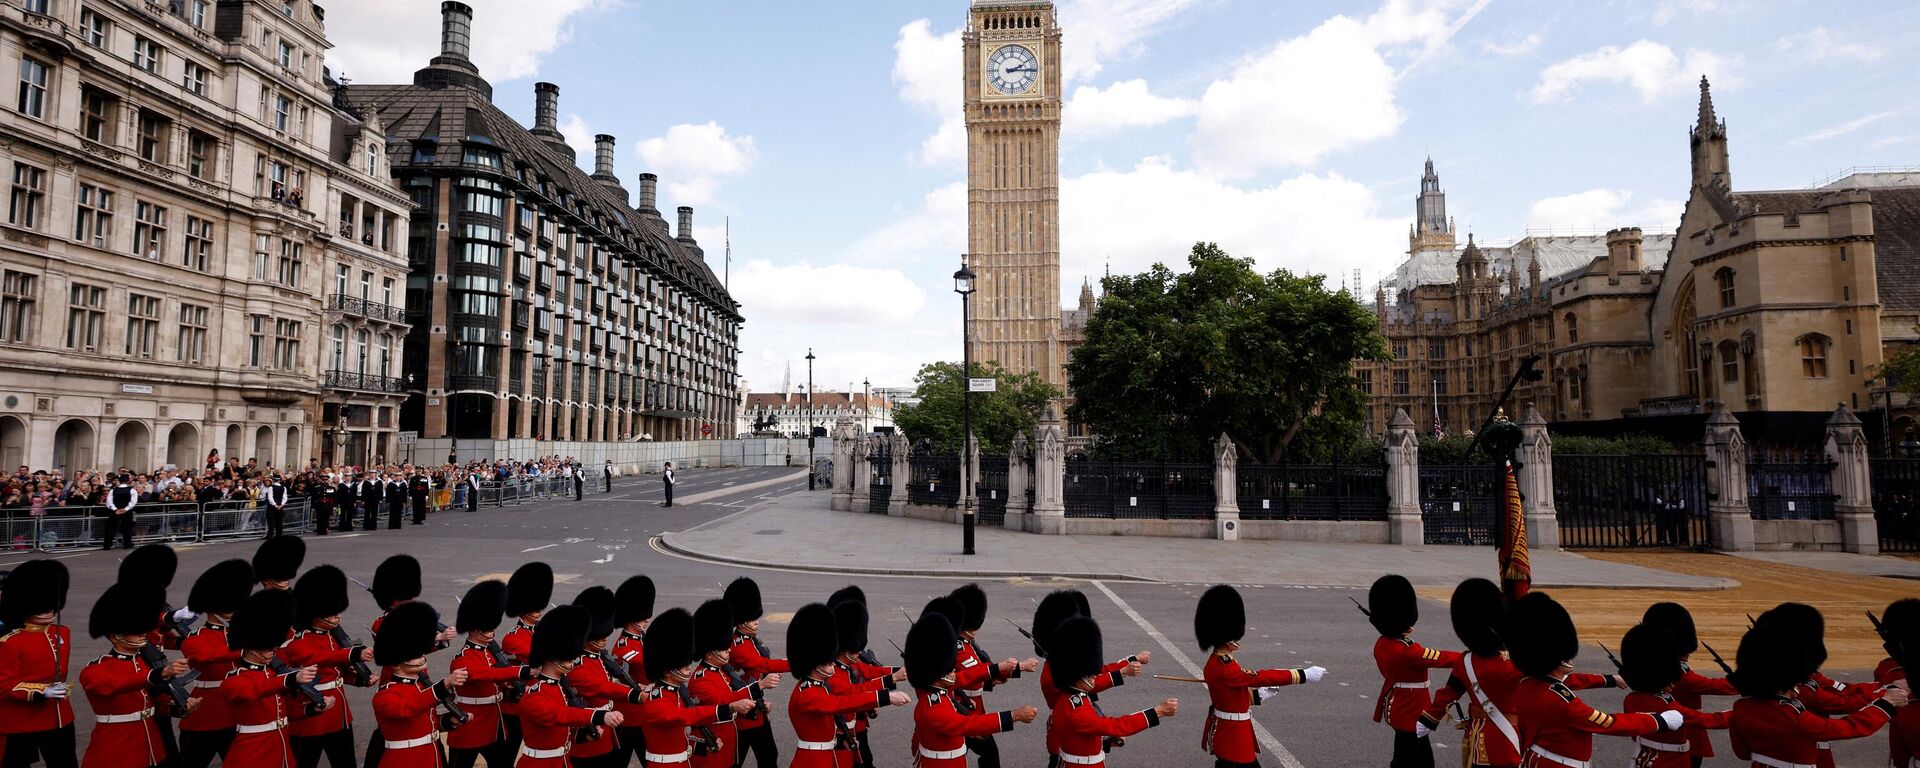 Гвардейцы маршируют на Парламентской площади в центре Лондона 14 сентября 2022 года перед торжественным шествием гроба королевы Елизаветы II из Букингемского дворца в Вестминстер-холл - Sputnik International, 1920, 15.09.2022